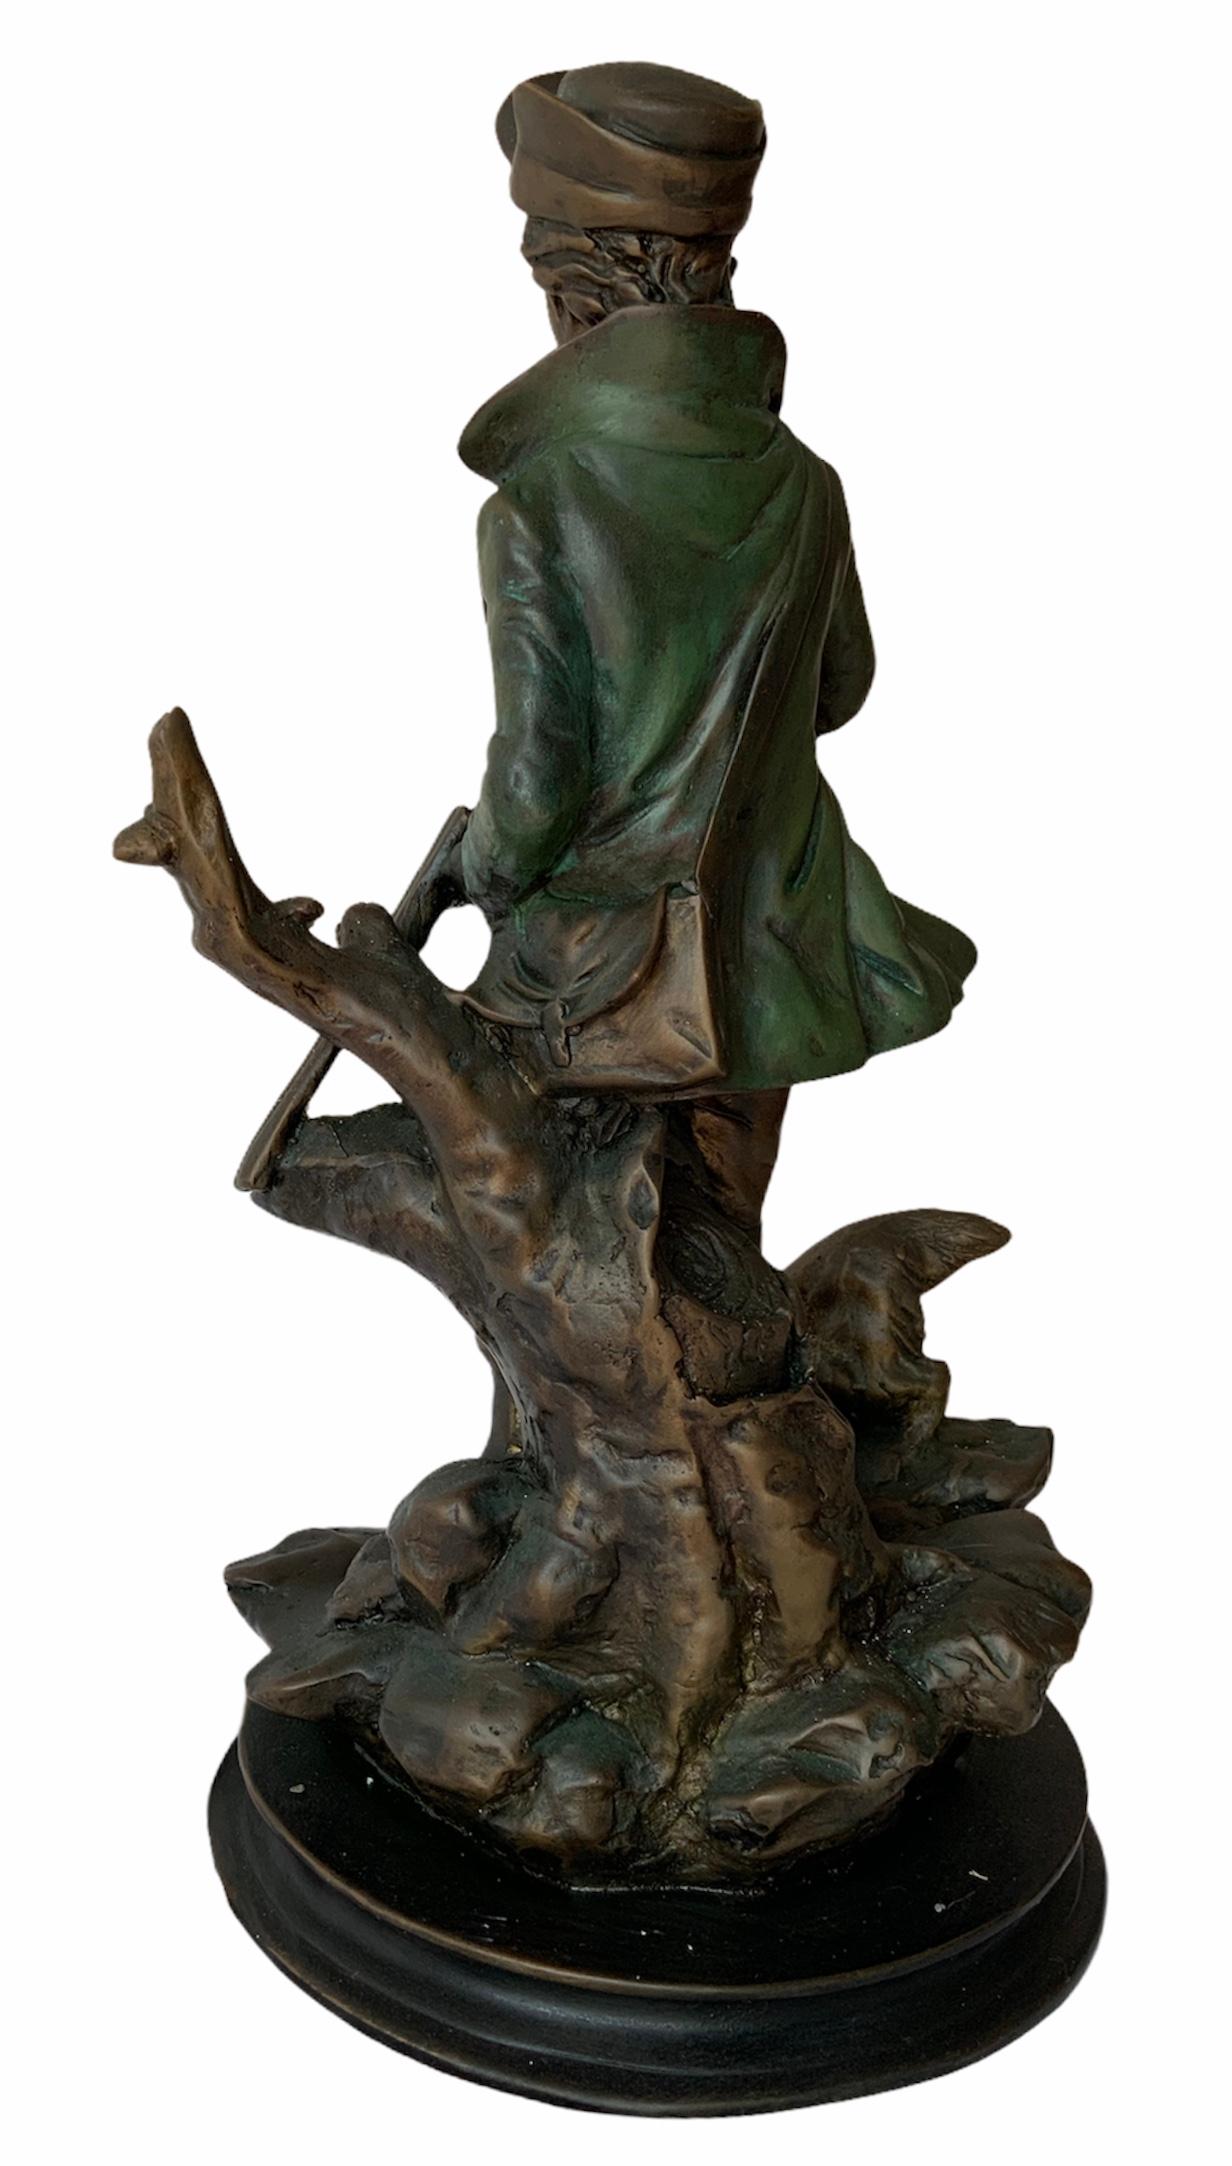 Dies ist eine Metallskulptur eines jungen Mannes, der mit seinem Hund jagt. Er ist bekleidet mit einem offenen grünen Mantel, einer langen Hose, Stiefeln, einem Hut und einem Kugelgürtel um die Taille. Es sieht so aus, als würde er sein Gewehr